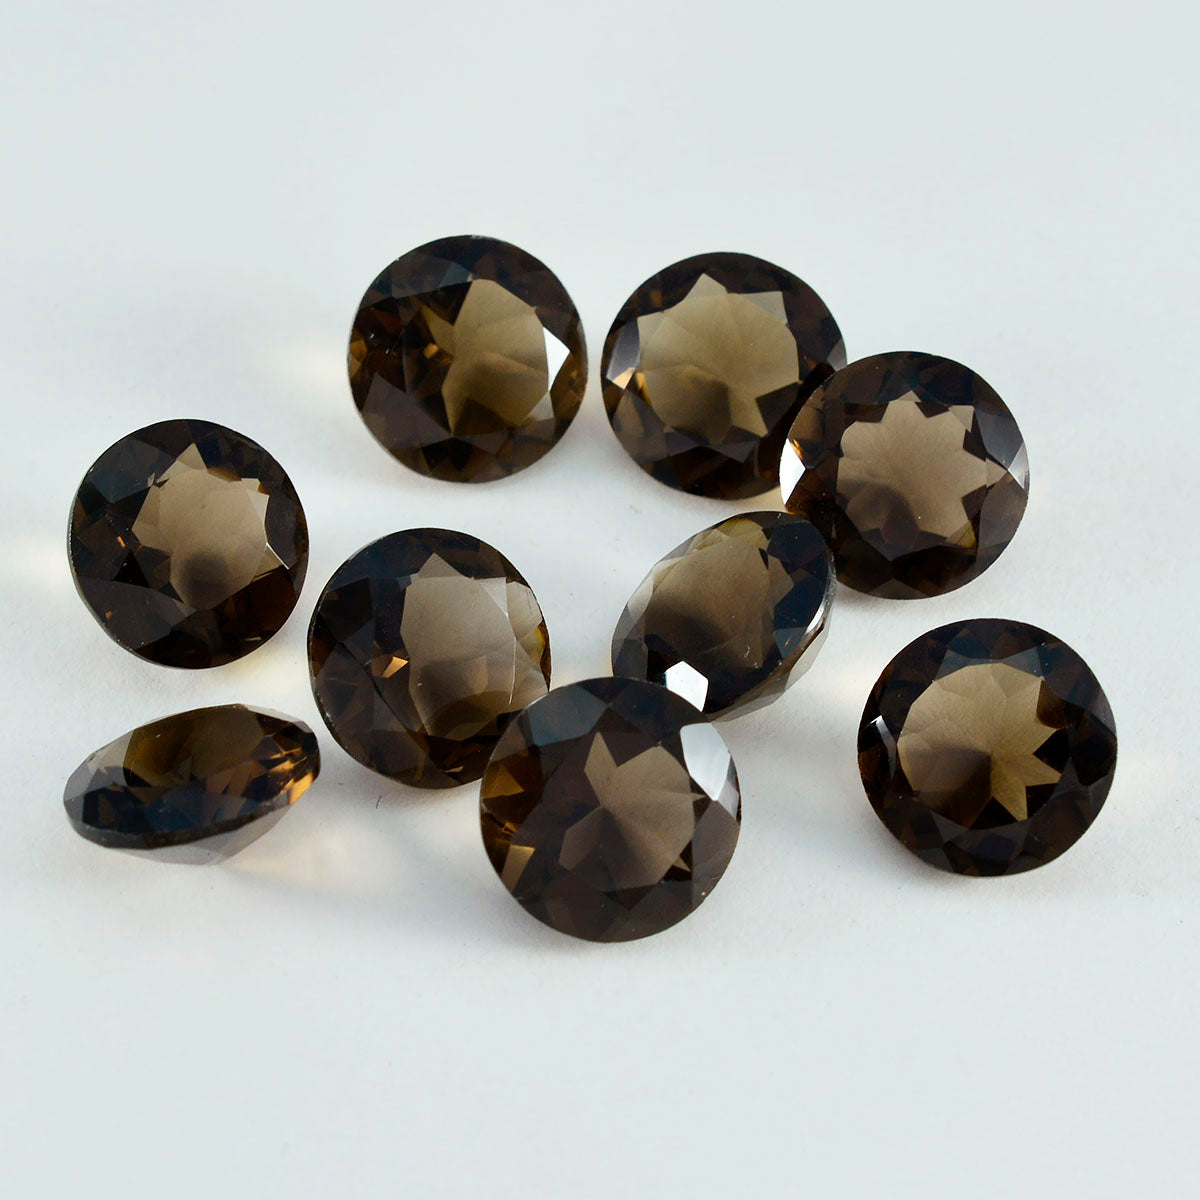 riyogems 1 шт. натуральный коричневый дымчатый кварц ограненный 10x10 мм круглая форма красивый качественный драгоценный камень